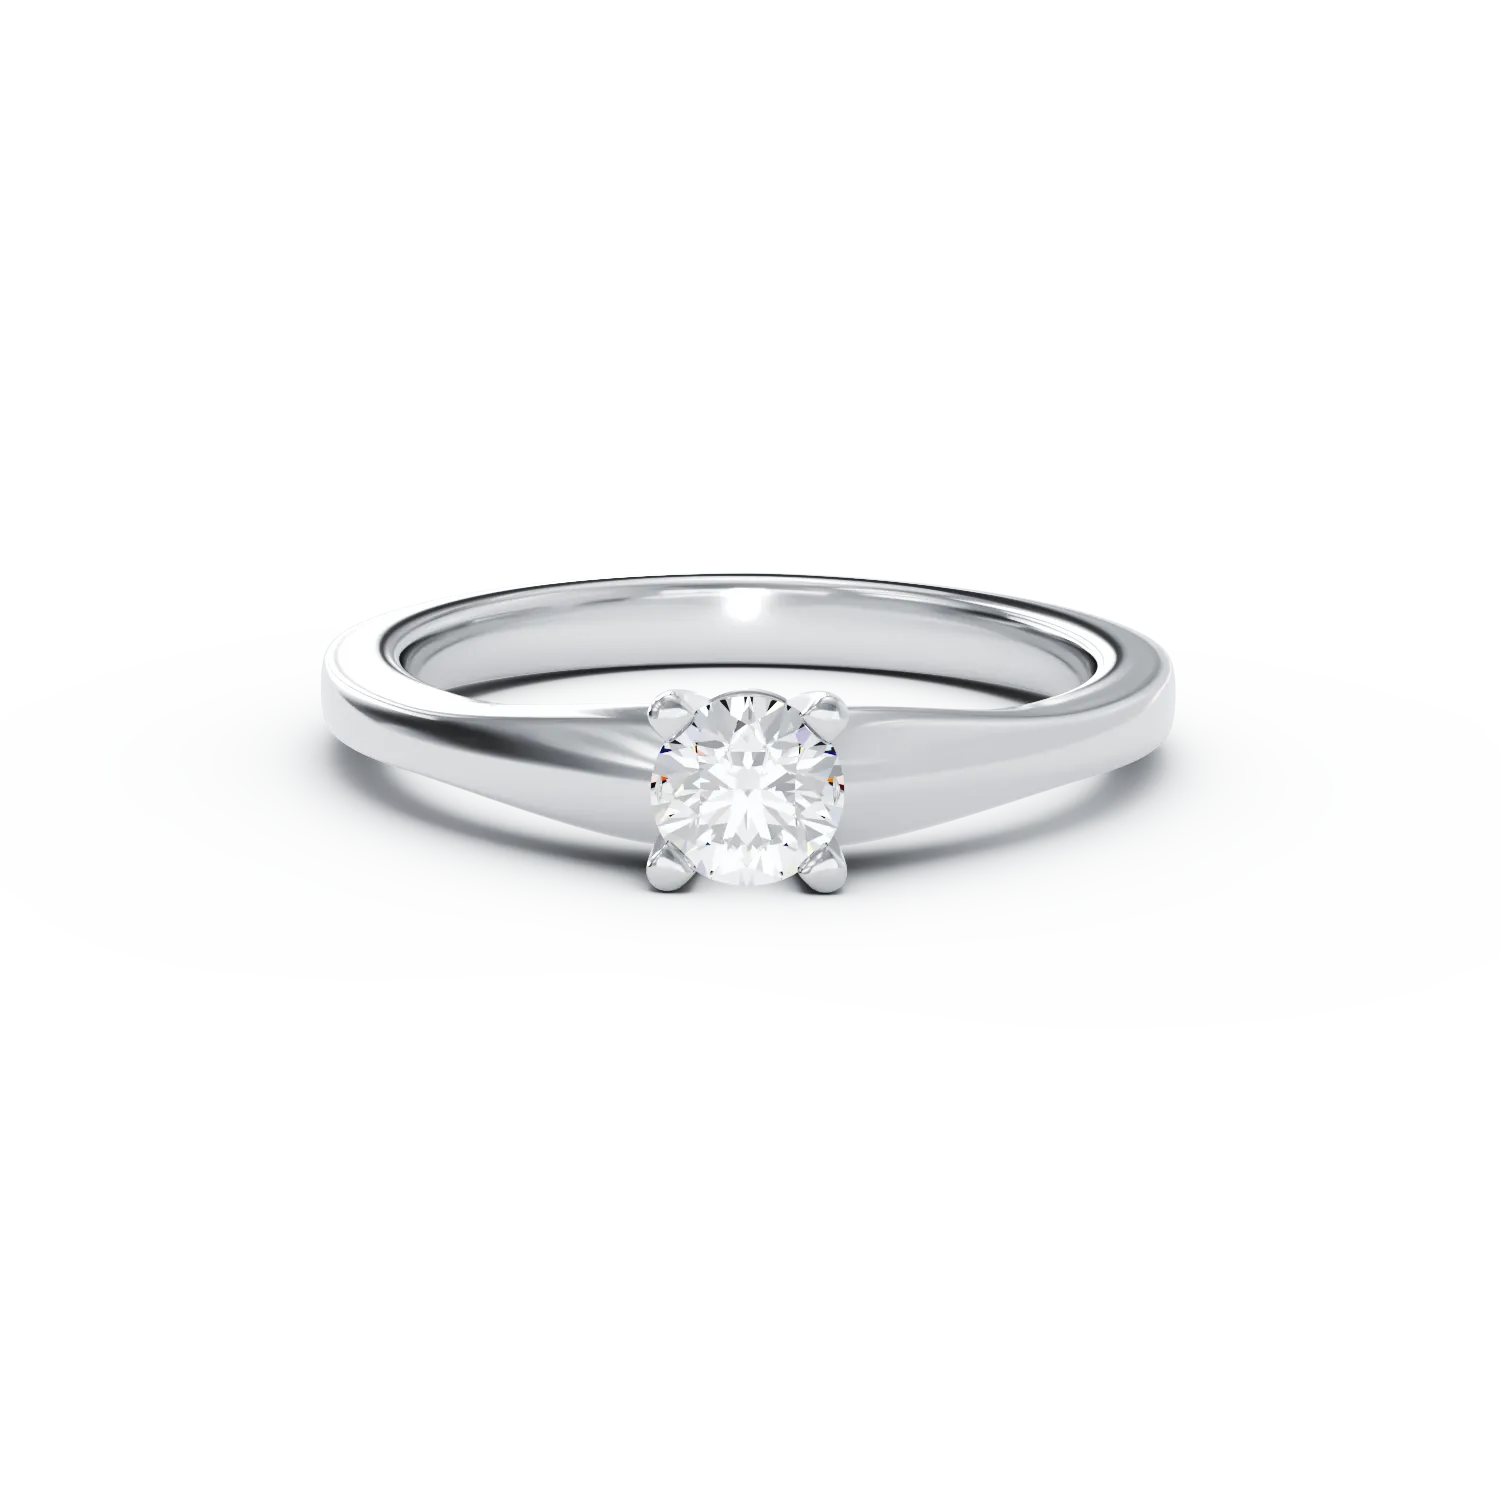 Eljegyzési gyűrű 18K-os fehér aranyból 0,31ct gyémánttal. Gramm: 2,7